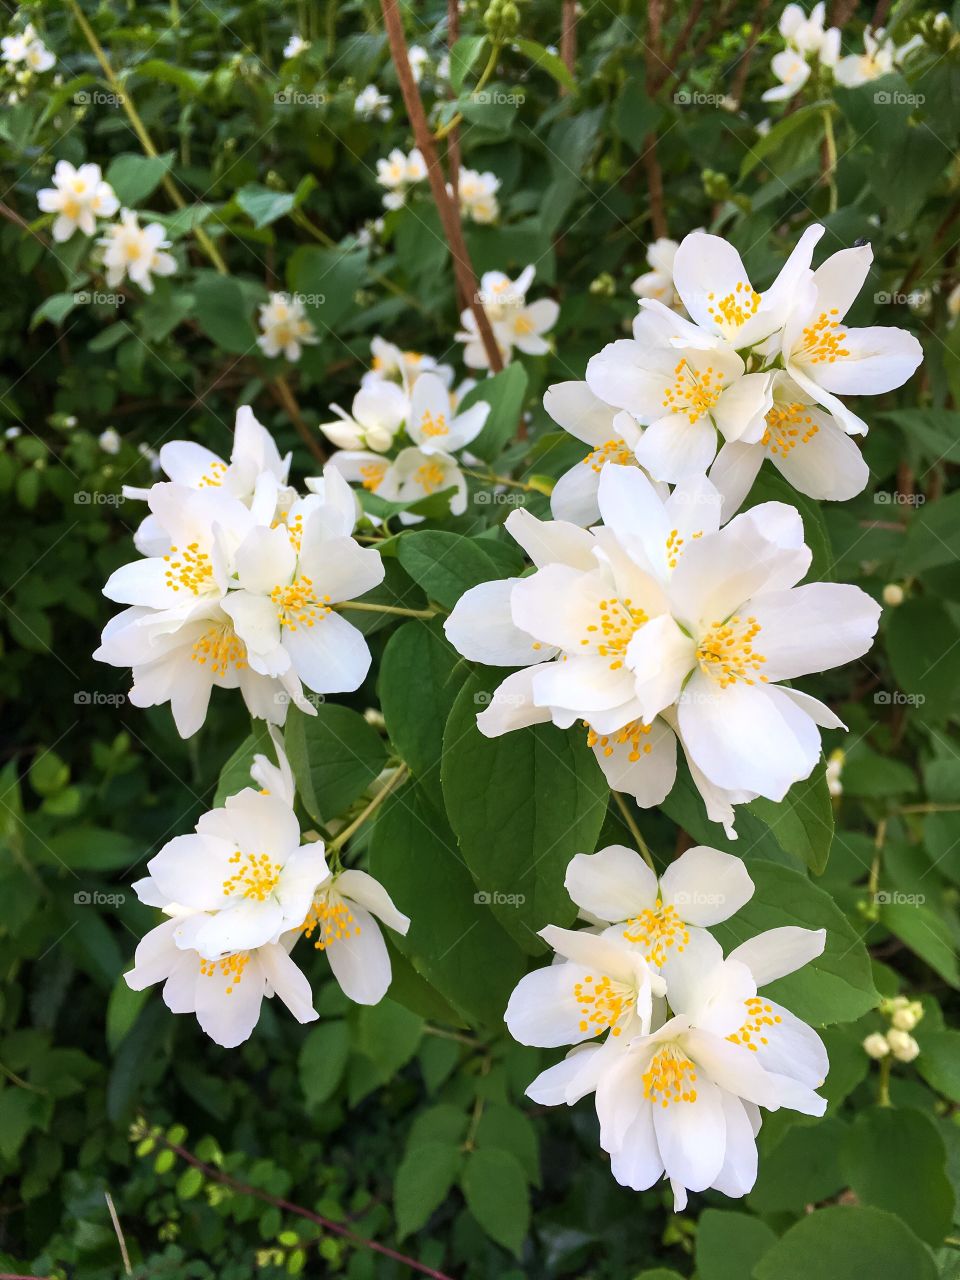 Deutzia gracilis 'Nikko' in white spring flowers, slender deutzia shrub.